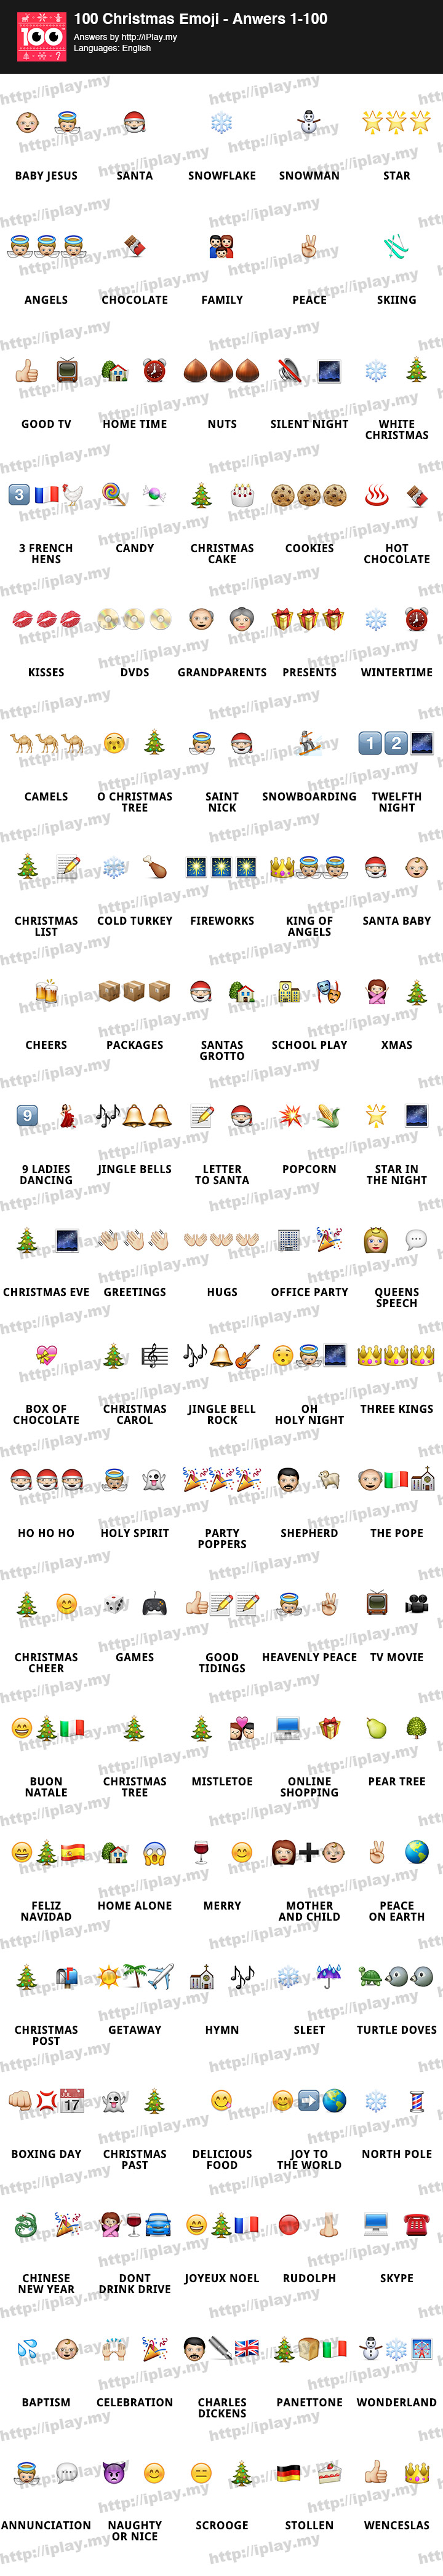 100 Christmas Emoji Answers iPlay my